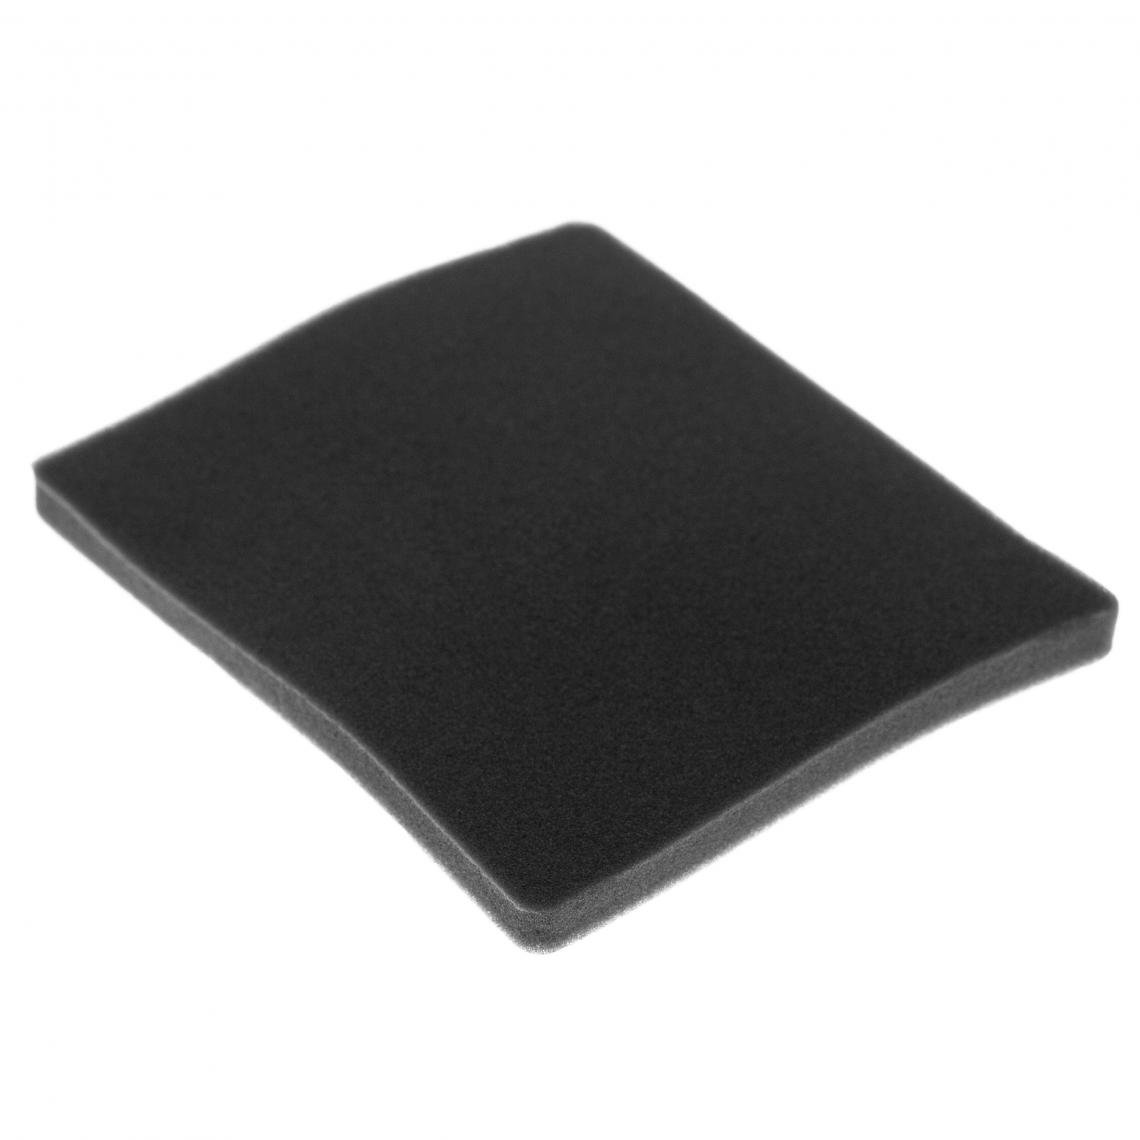 Vhbw - vhbw Filtre compatible avec Electrolux ZAM6103 (910286667) aspirateur - filtre de sortie d'air (filtre éponge), noir - Accessoire entretien des sols